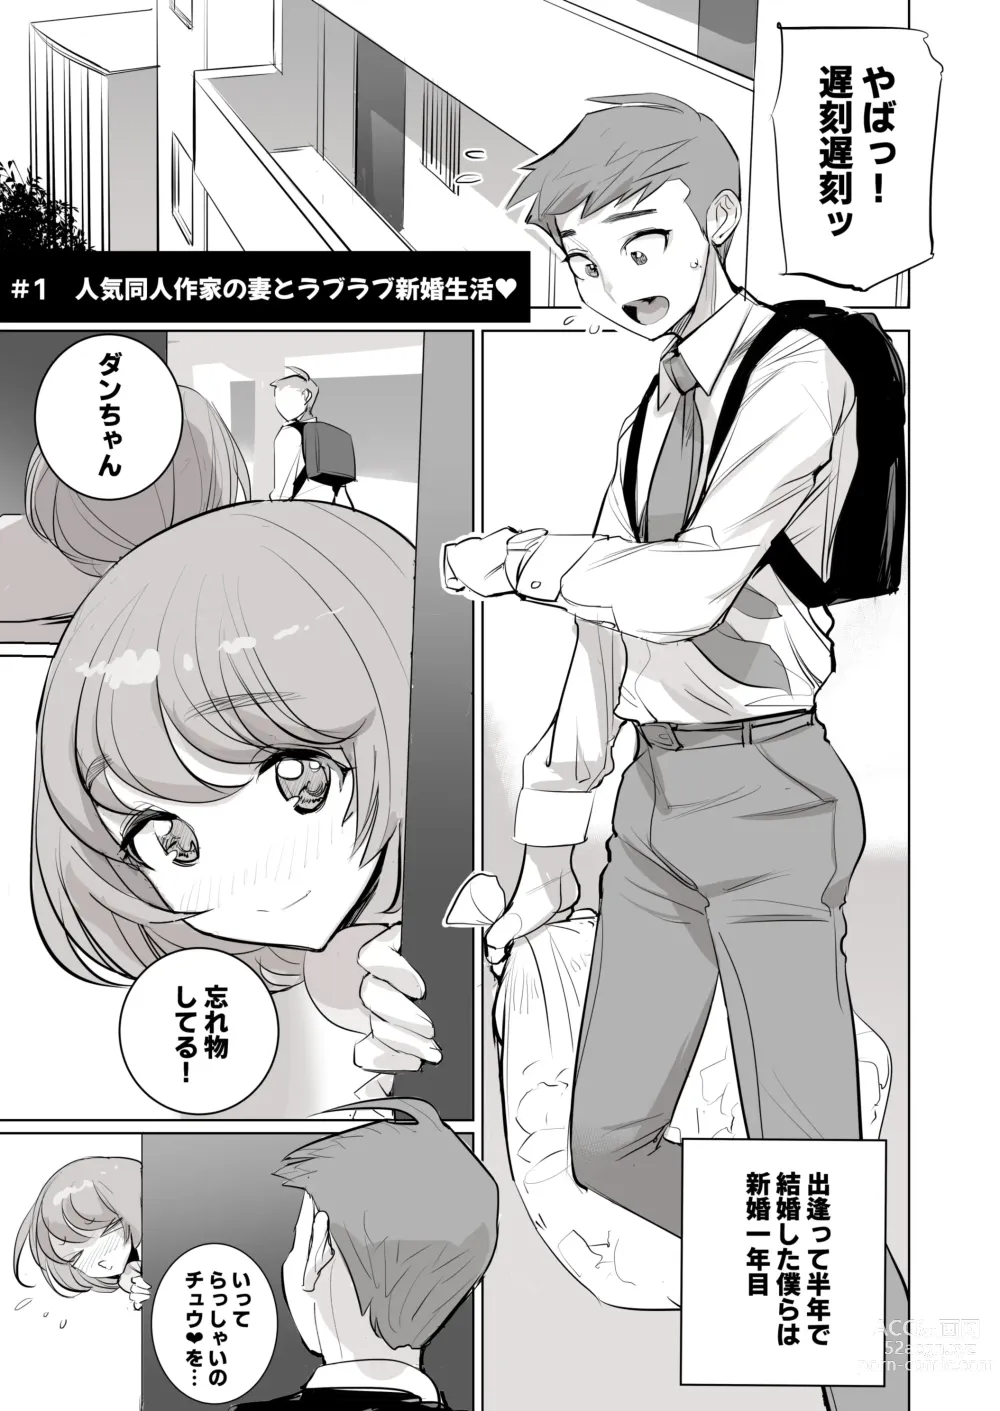 Page 2 of doujinshi 人気同人作家の妻とラブラブ新婚性活でも妻が好きすぎてNTRしてしまうボクなんです